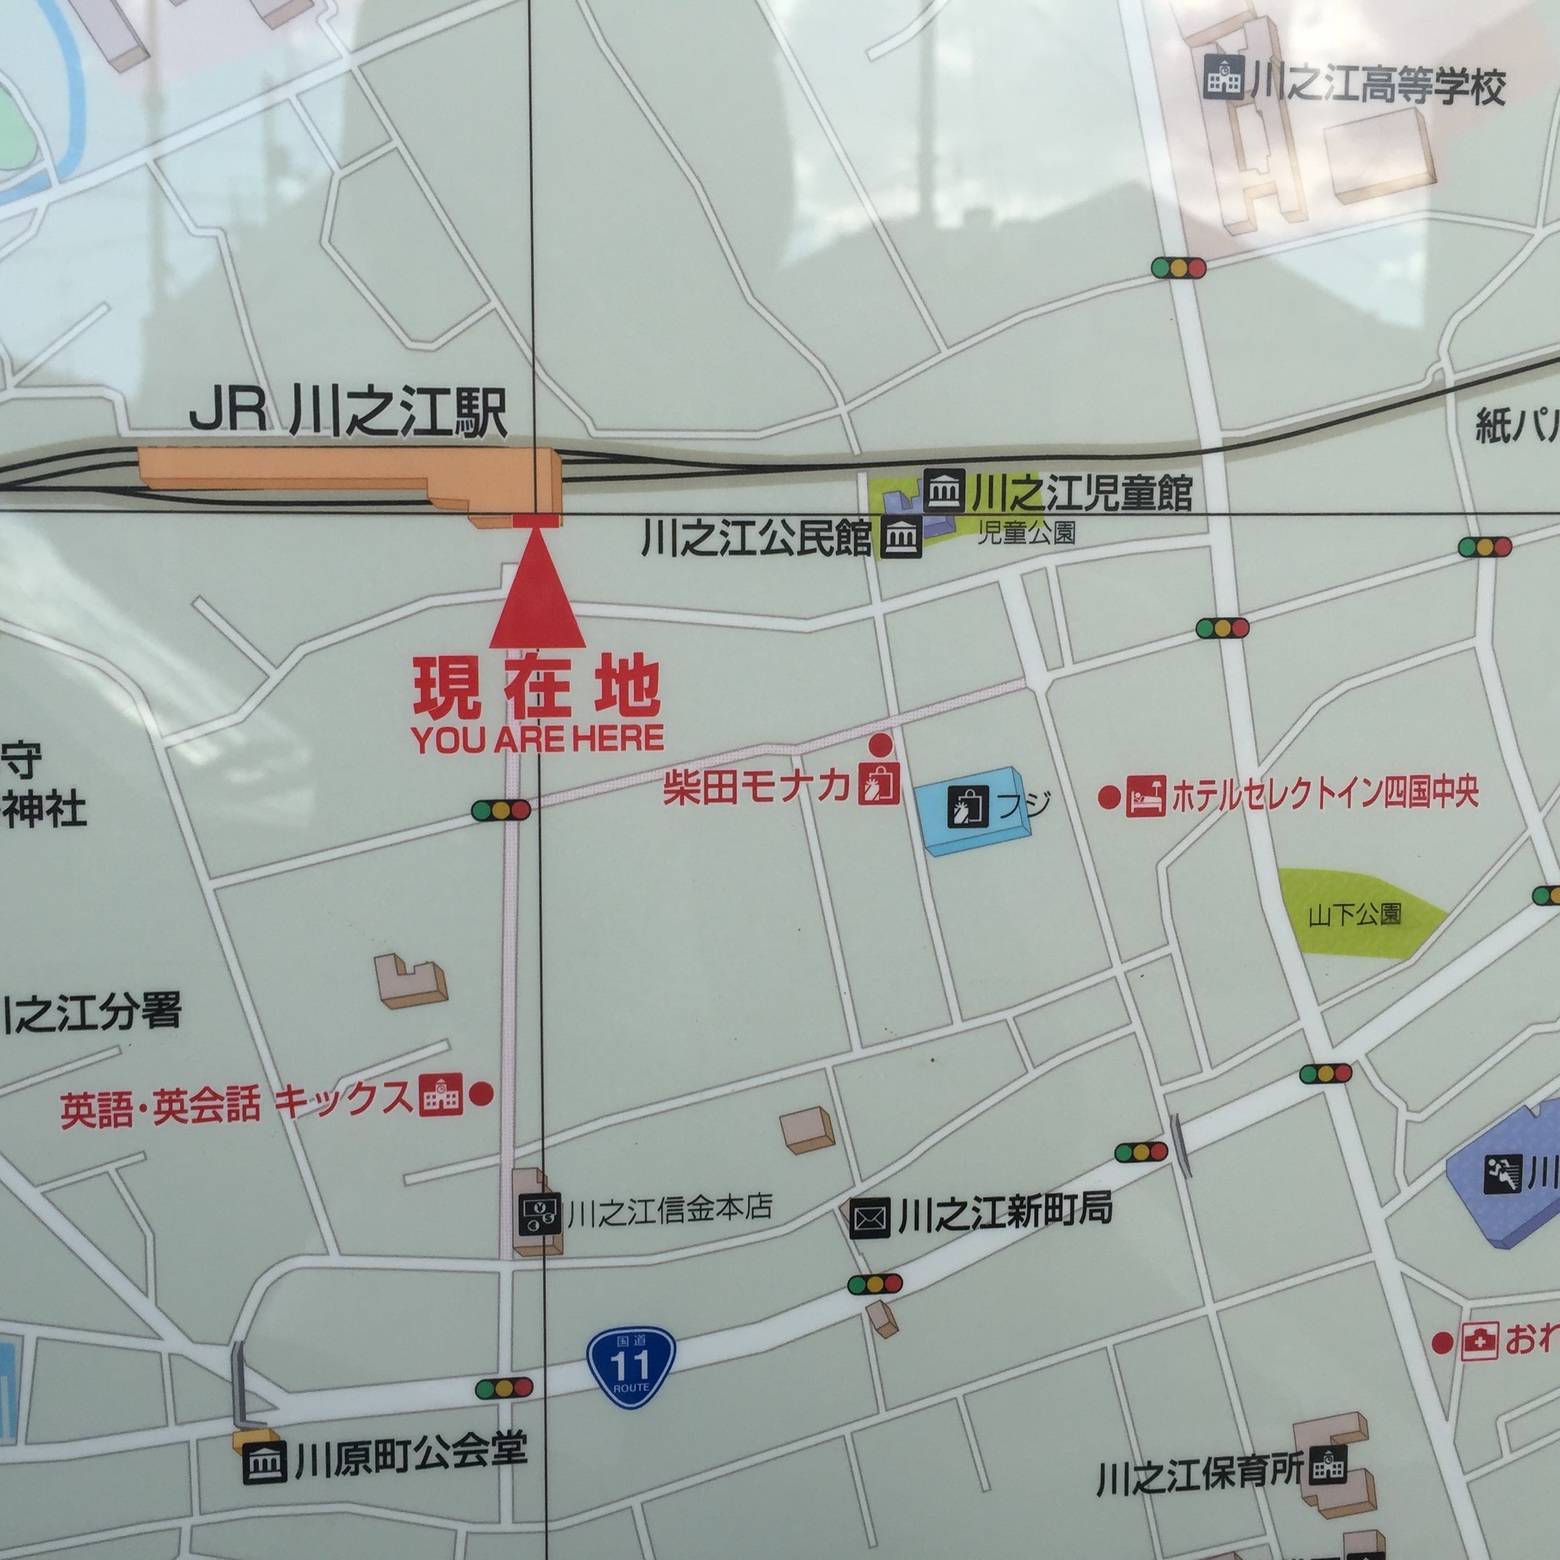 【アクセス】JR川之江駅前地図に出てます